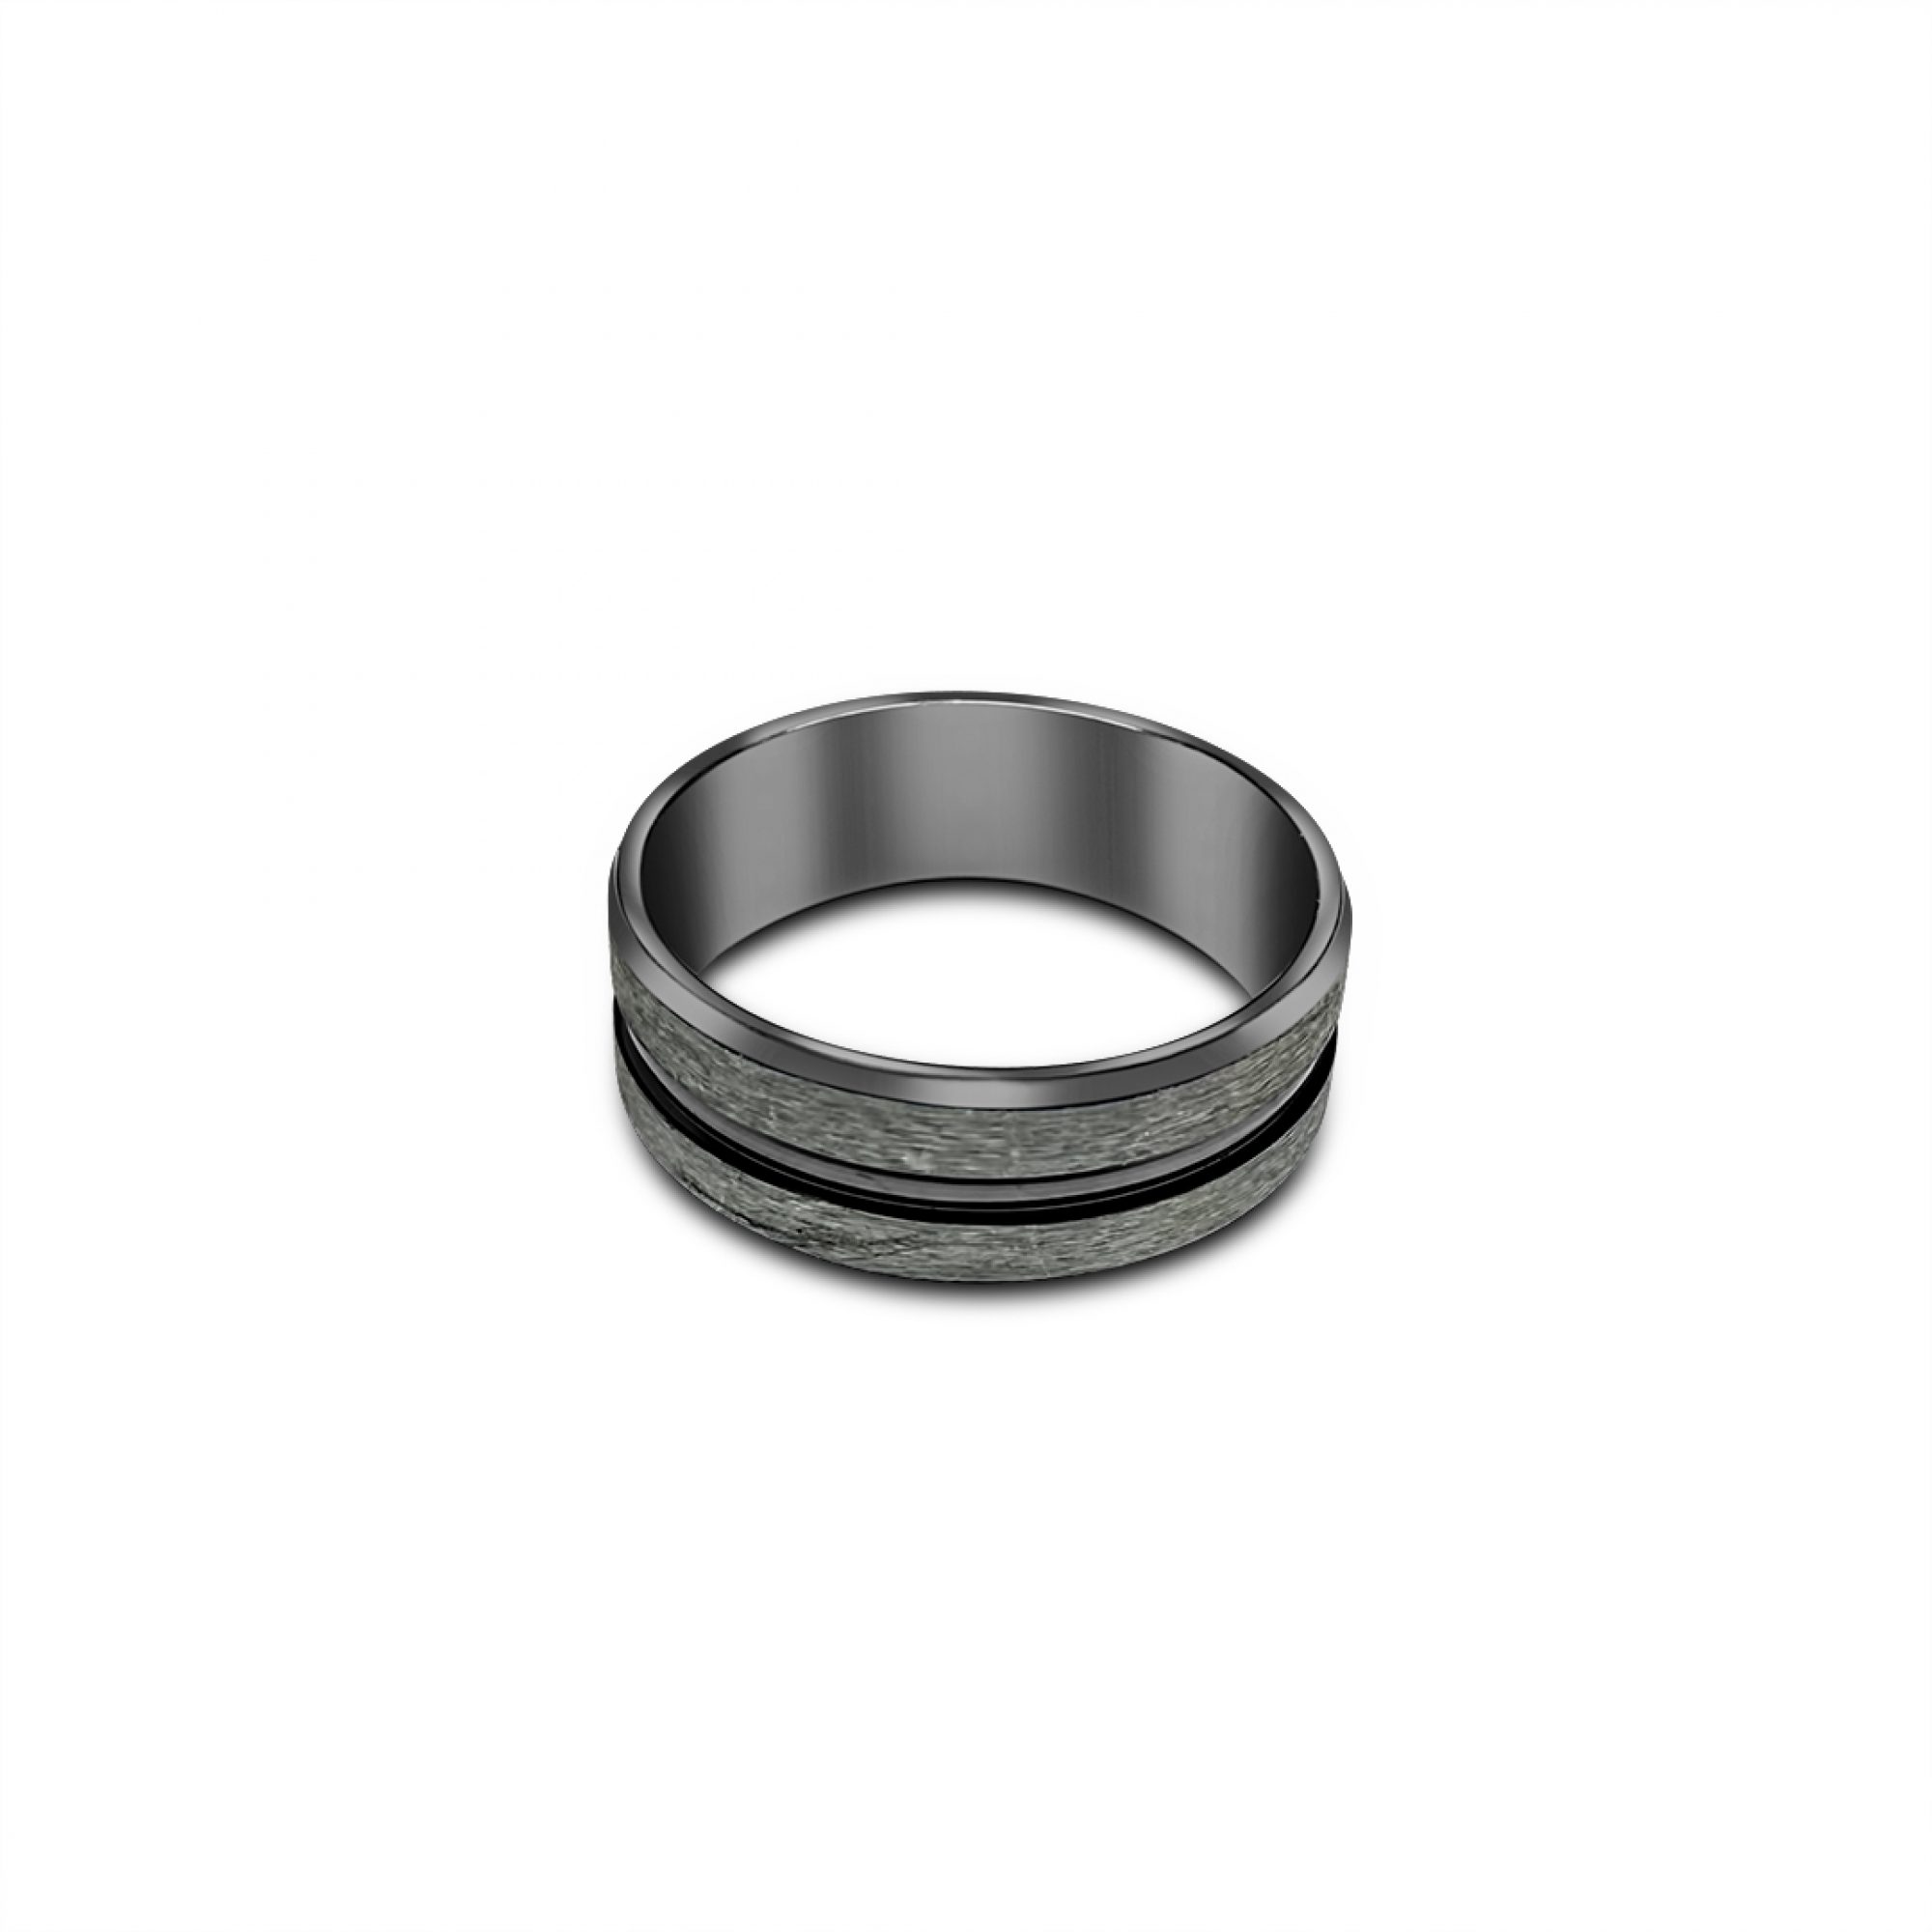 Black engraved steel ring